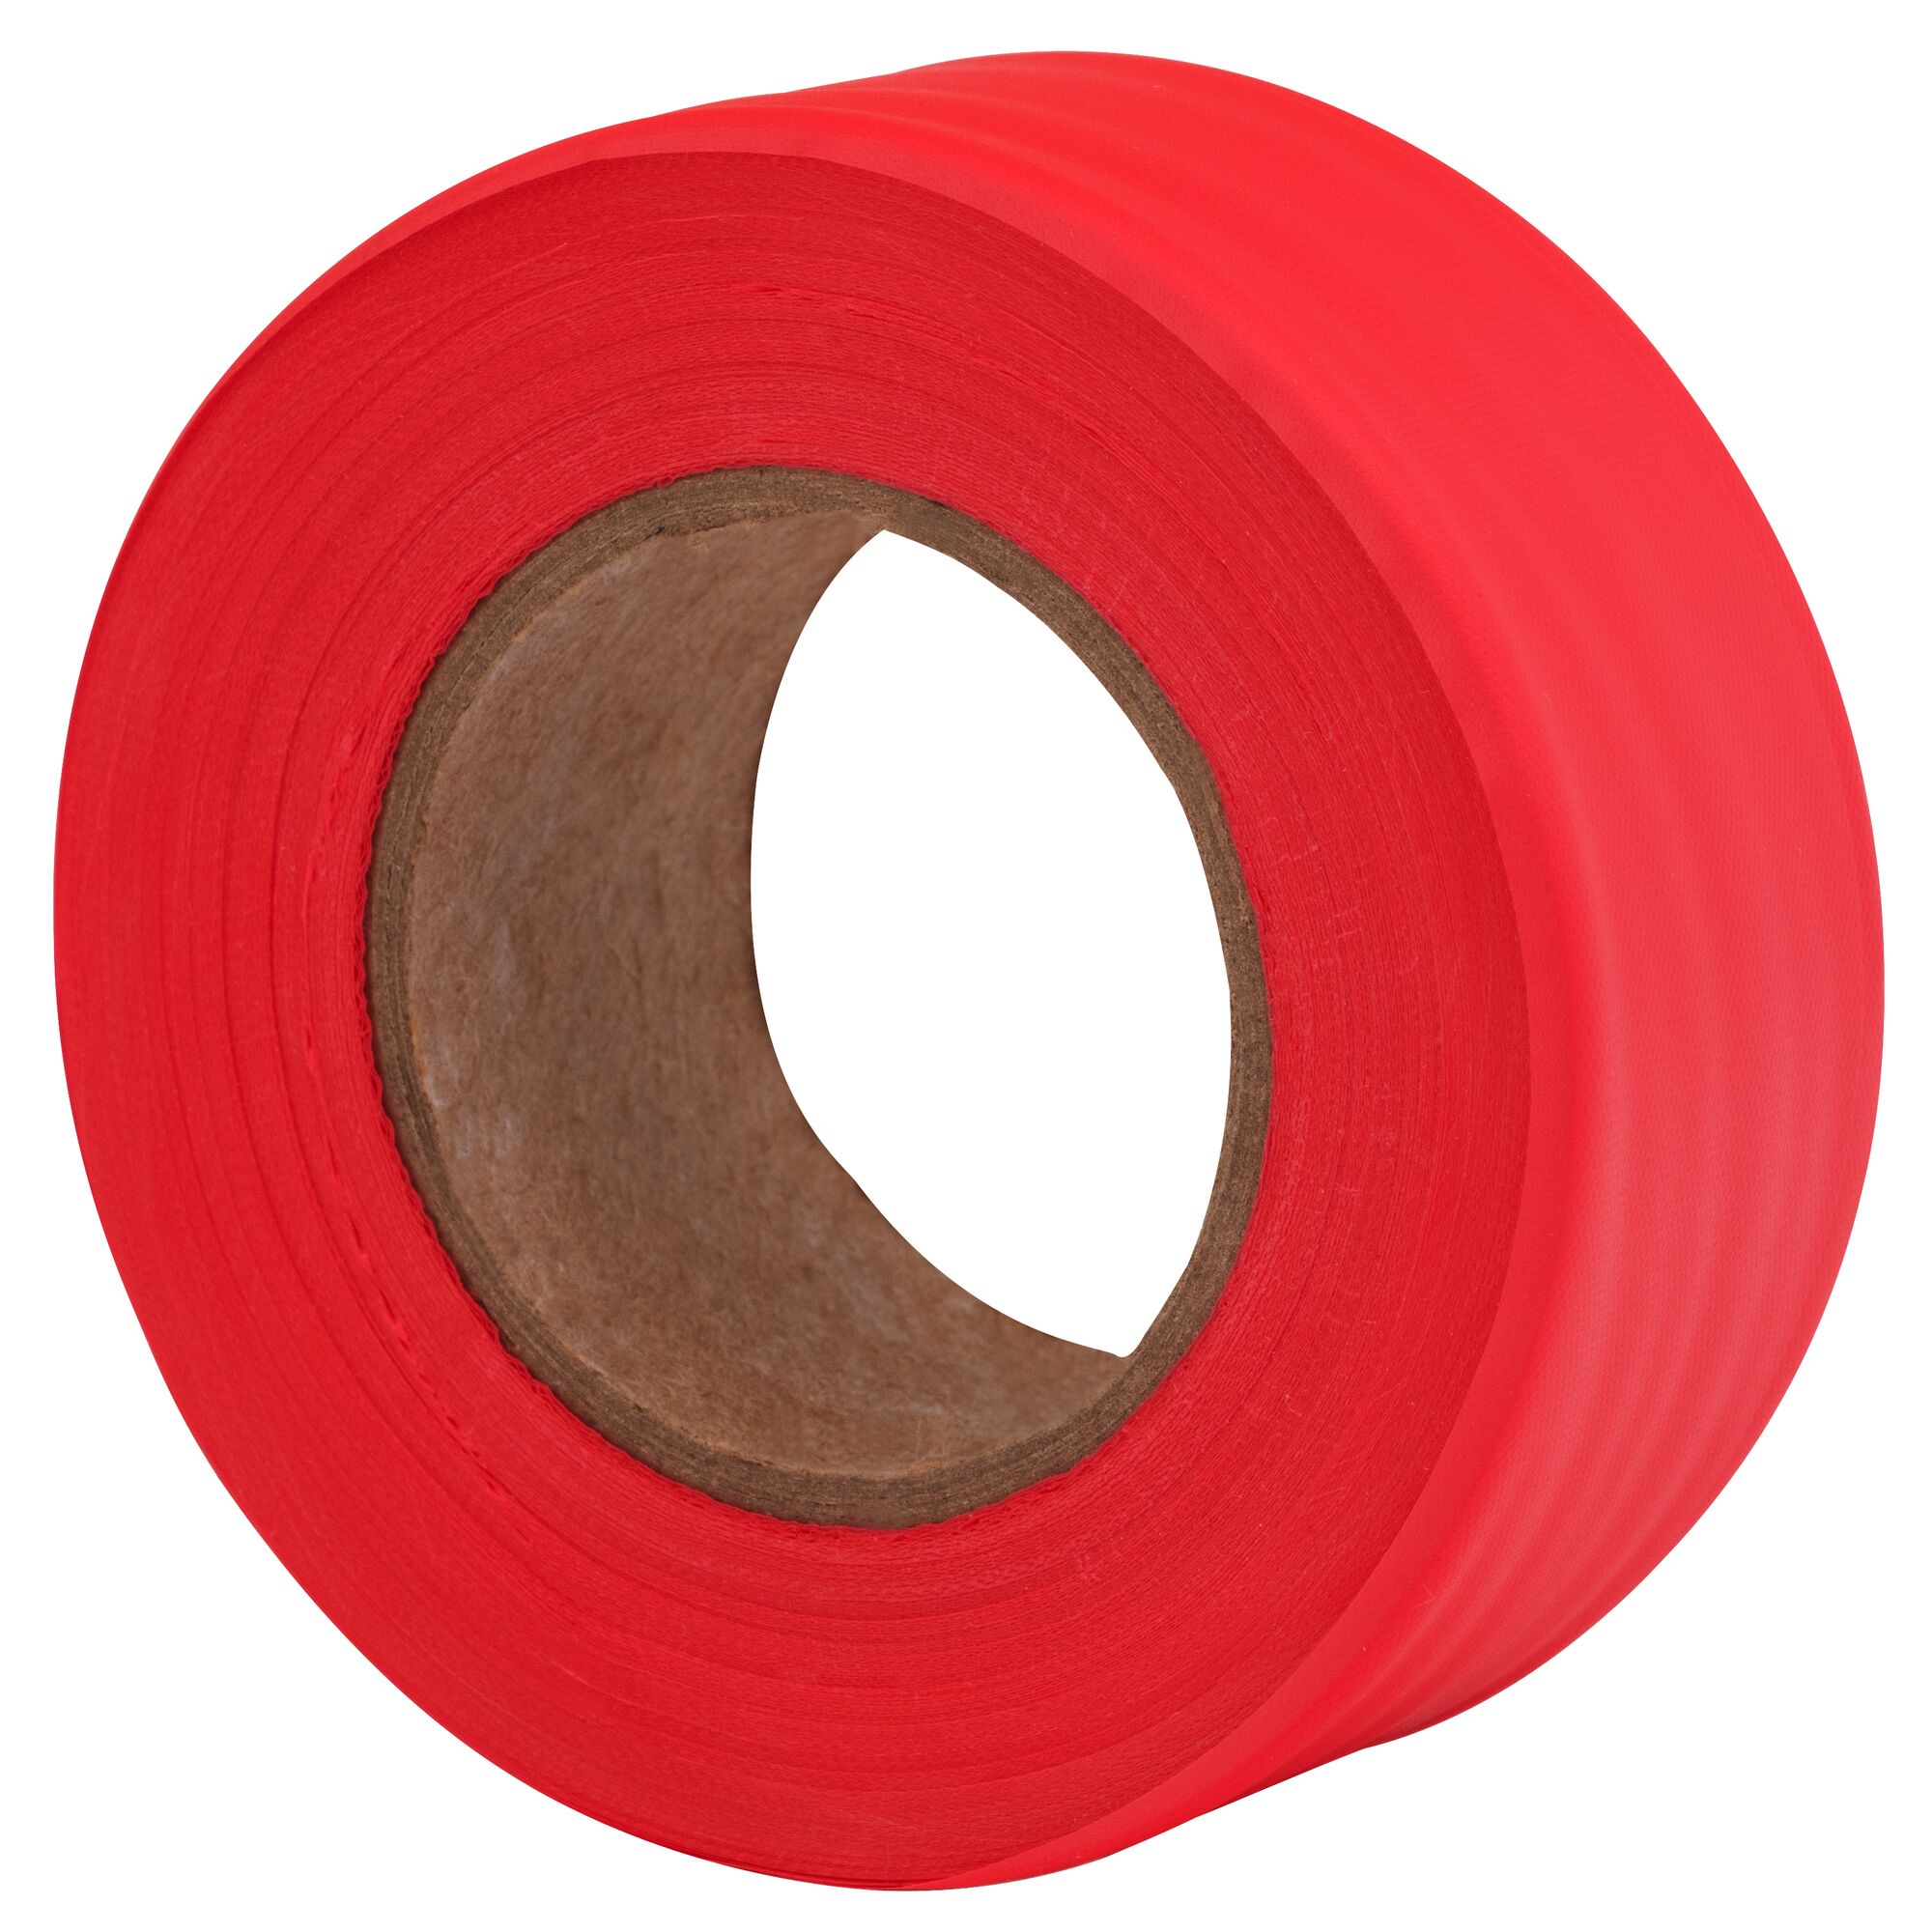 Hình ảnh 2 của mặt hàng Băng dính PVC màu đỏ Irwin